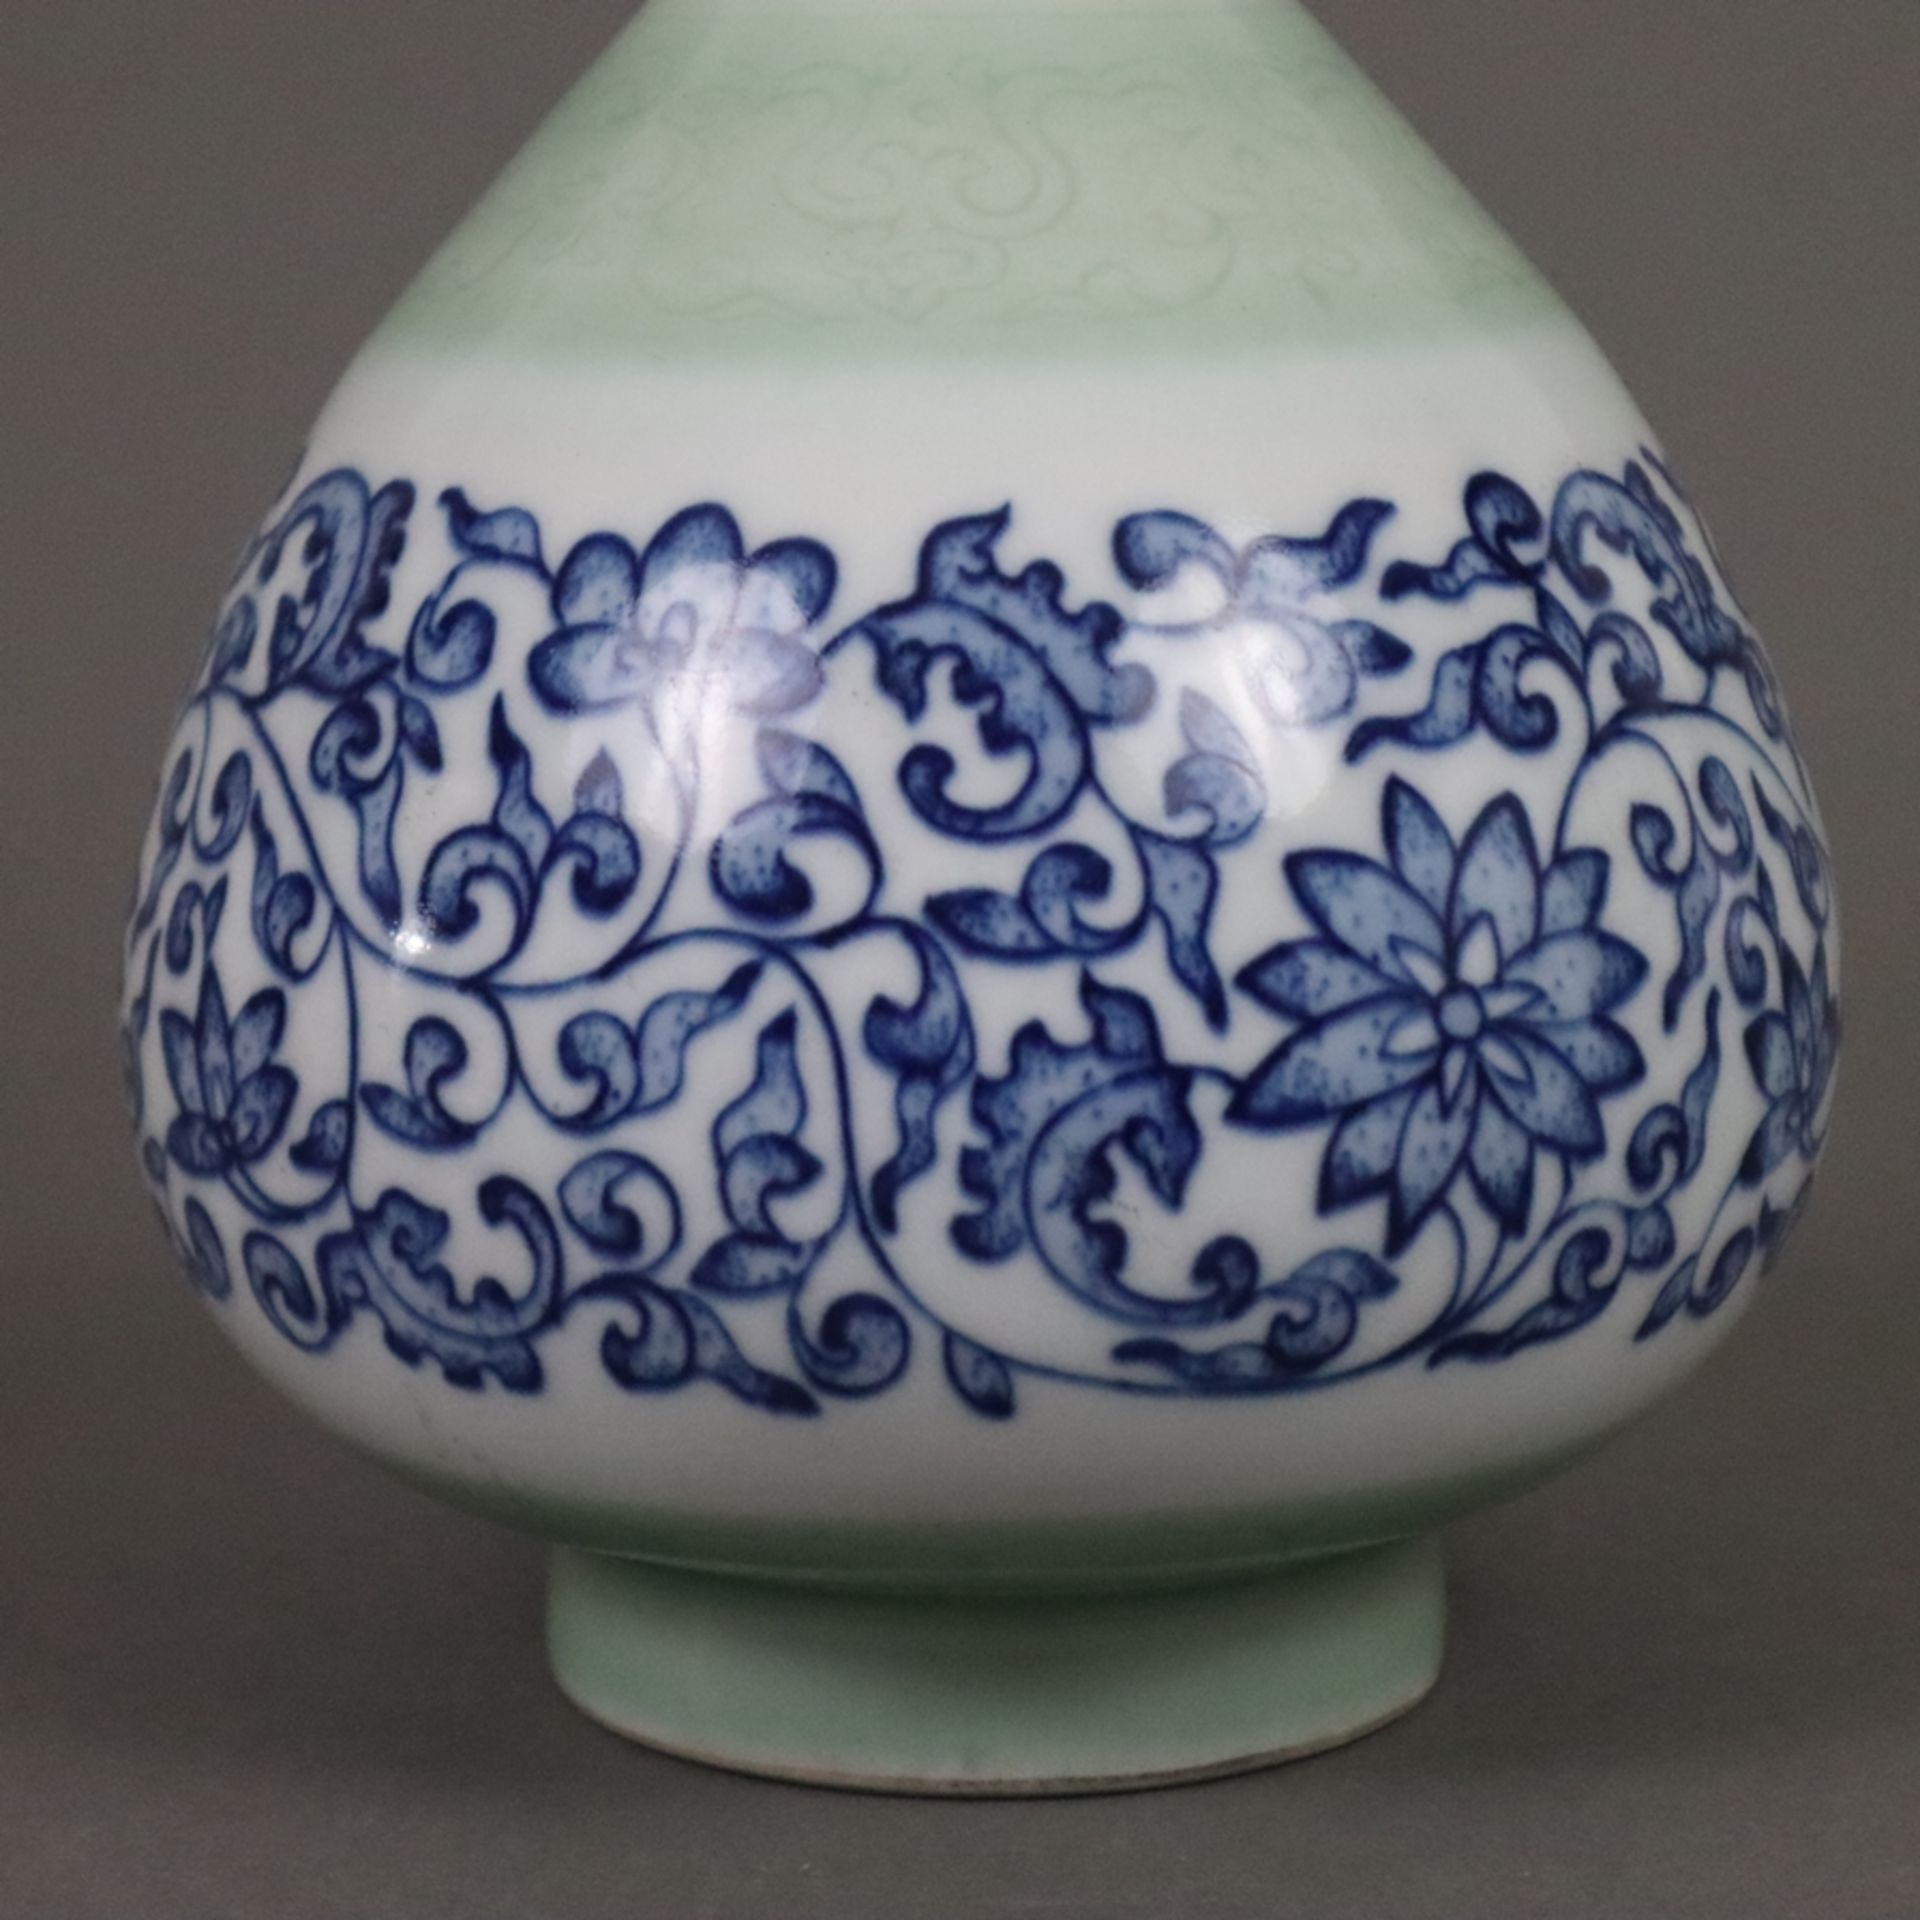 Flaschenvase - China, vom Typ „Yuhuchun“, zierliche blau-weiße Porzellanvase mit birnenförmigem Kör - Bild 5 aus 8